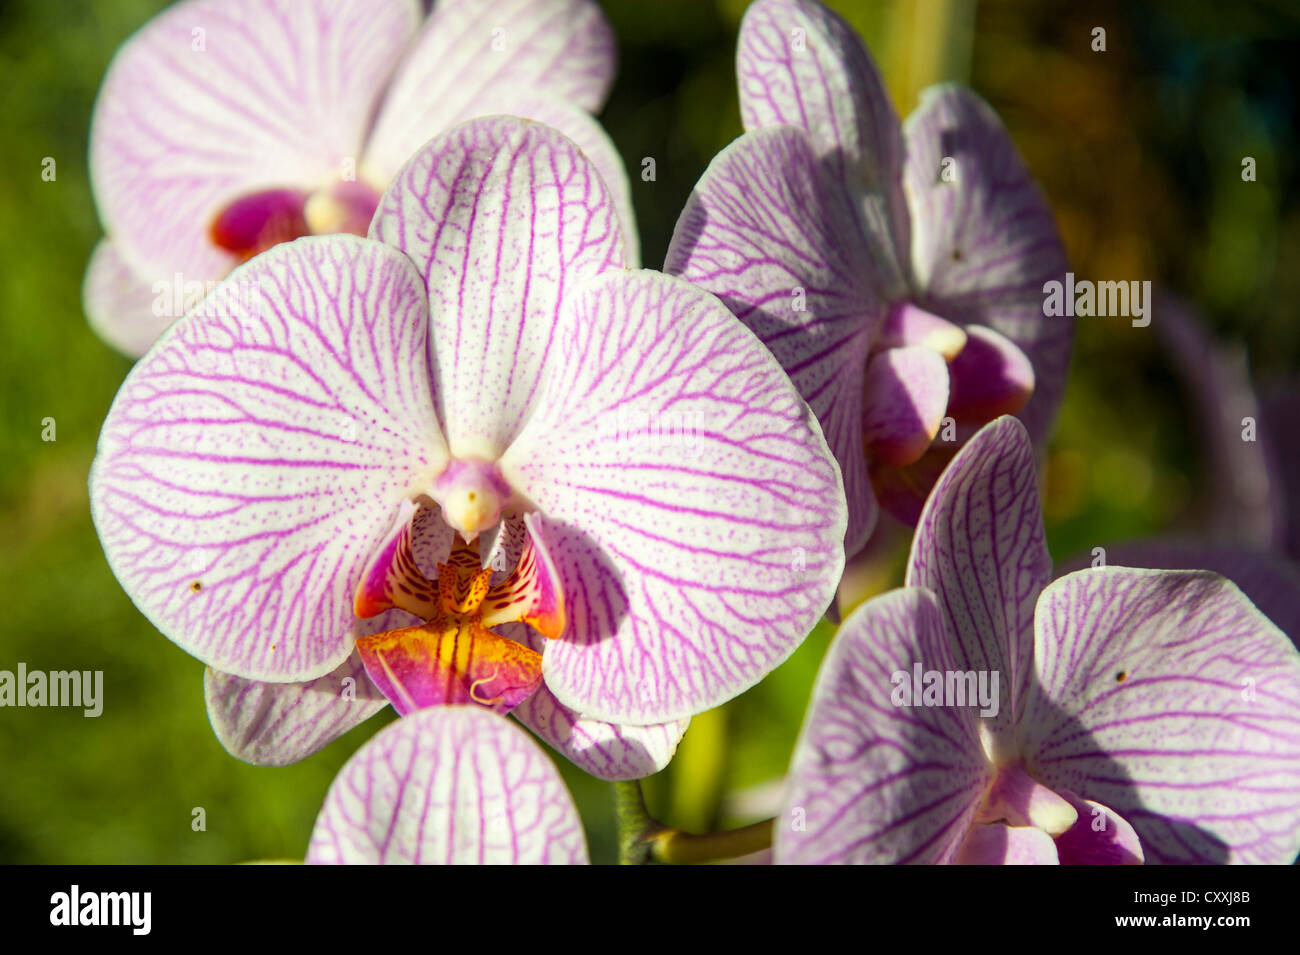 Flor De Orquídeas Naturales En El Jardín Orquídeas Tailandesas. Orquídeas  Híbridas Para El Diseño De Conceptos De Belleza Y Agricu Imagen de archivo  - Imagen de resorte, fondo: 183360053